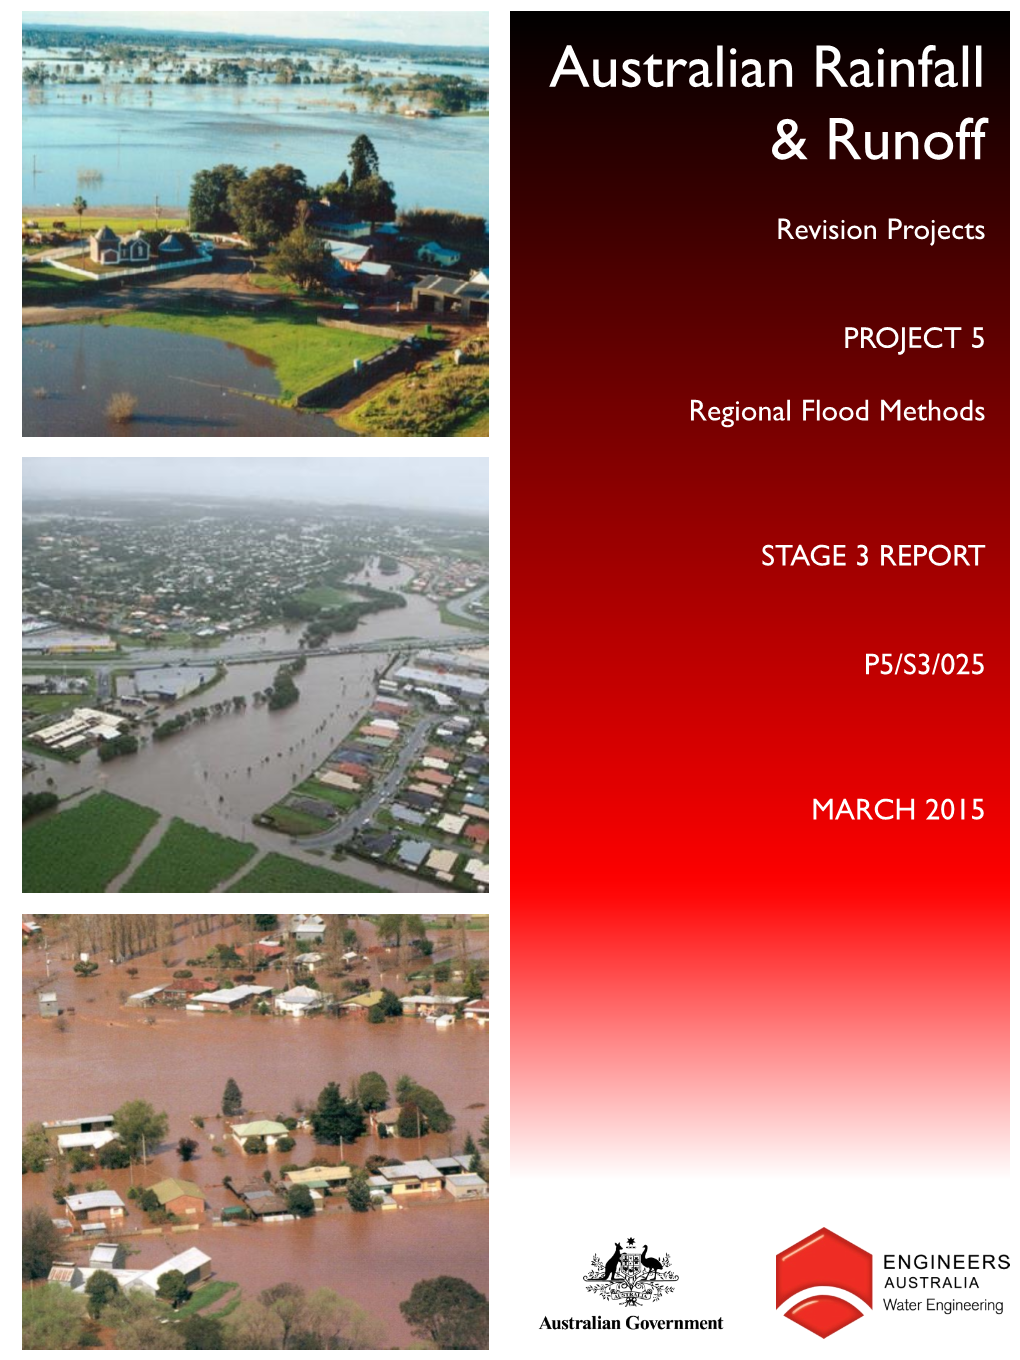 Regional Flood Methods